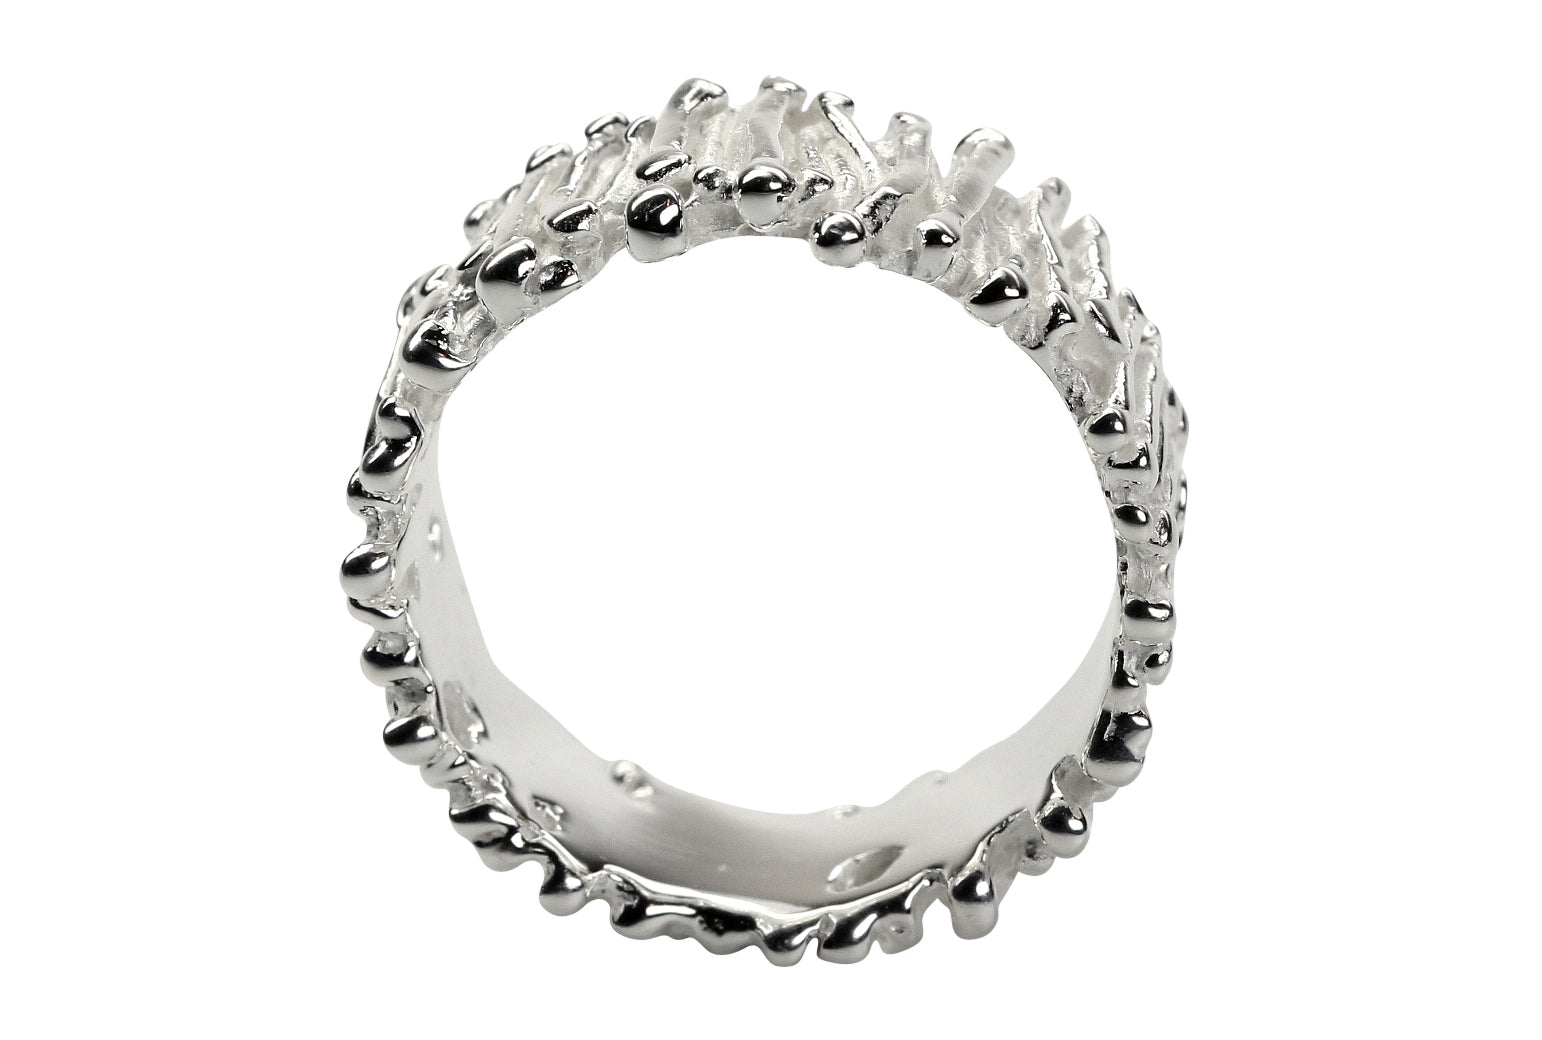 Ein Ring im Stäbchendesign für Damen und Herren aus Silber mit einer filigran gearbeiteten Oberfläche.